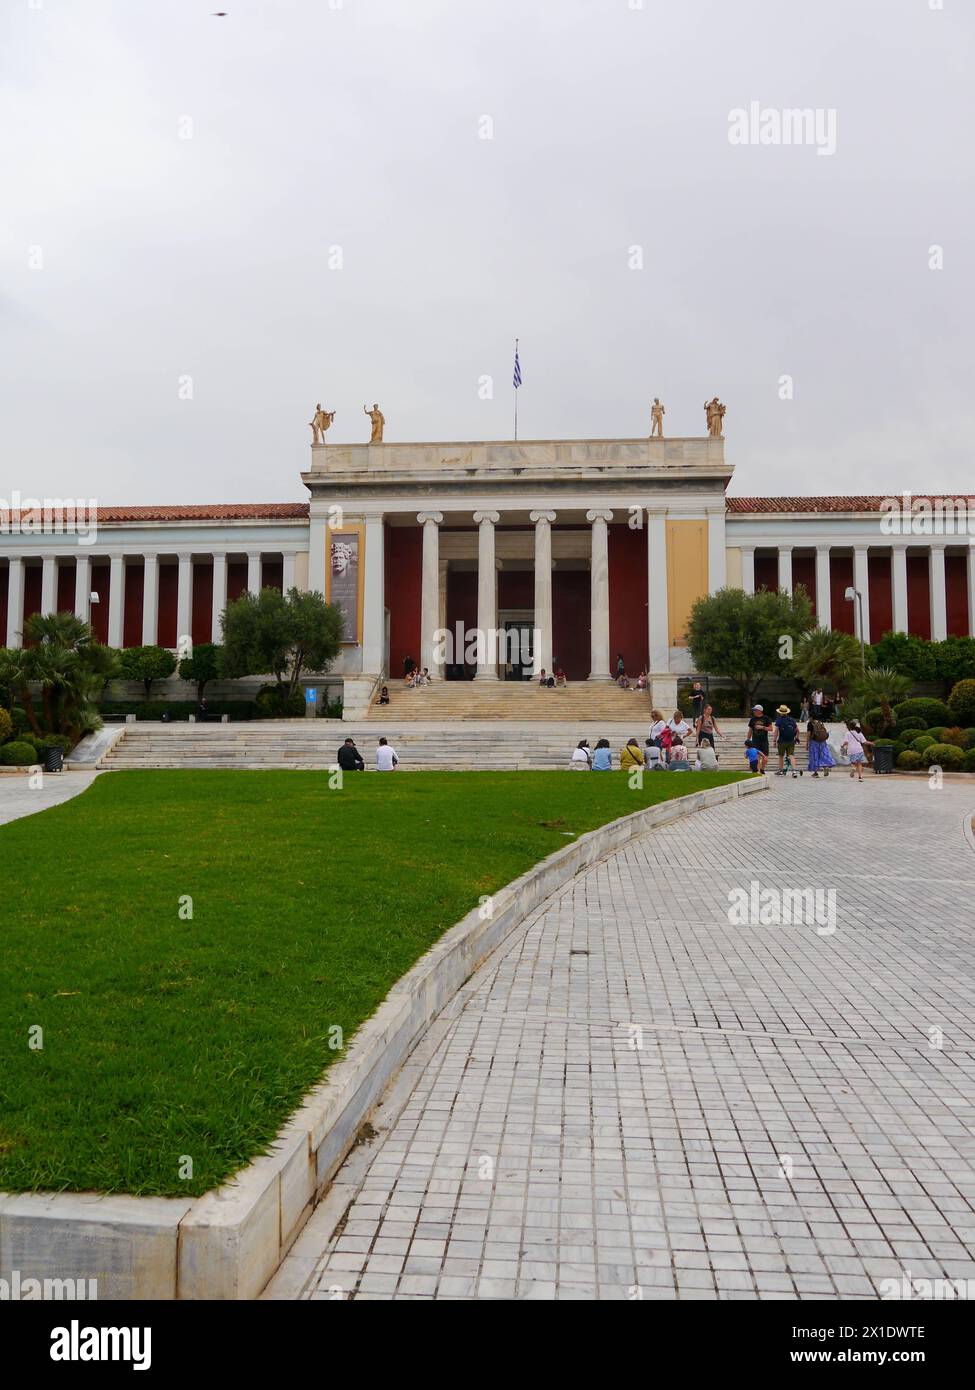 L'ancien Palais Royal qui sert maintenant de bâtiment du Parlement grec sur la place Syntagma, Athènes, Grèce Banque D'Images